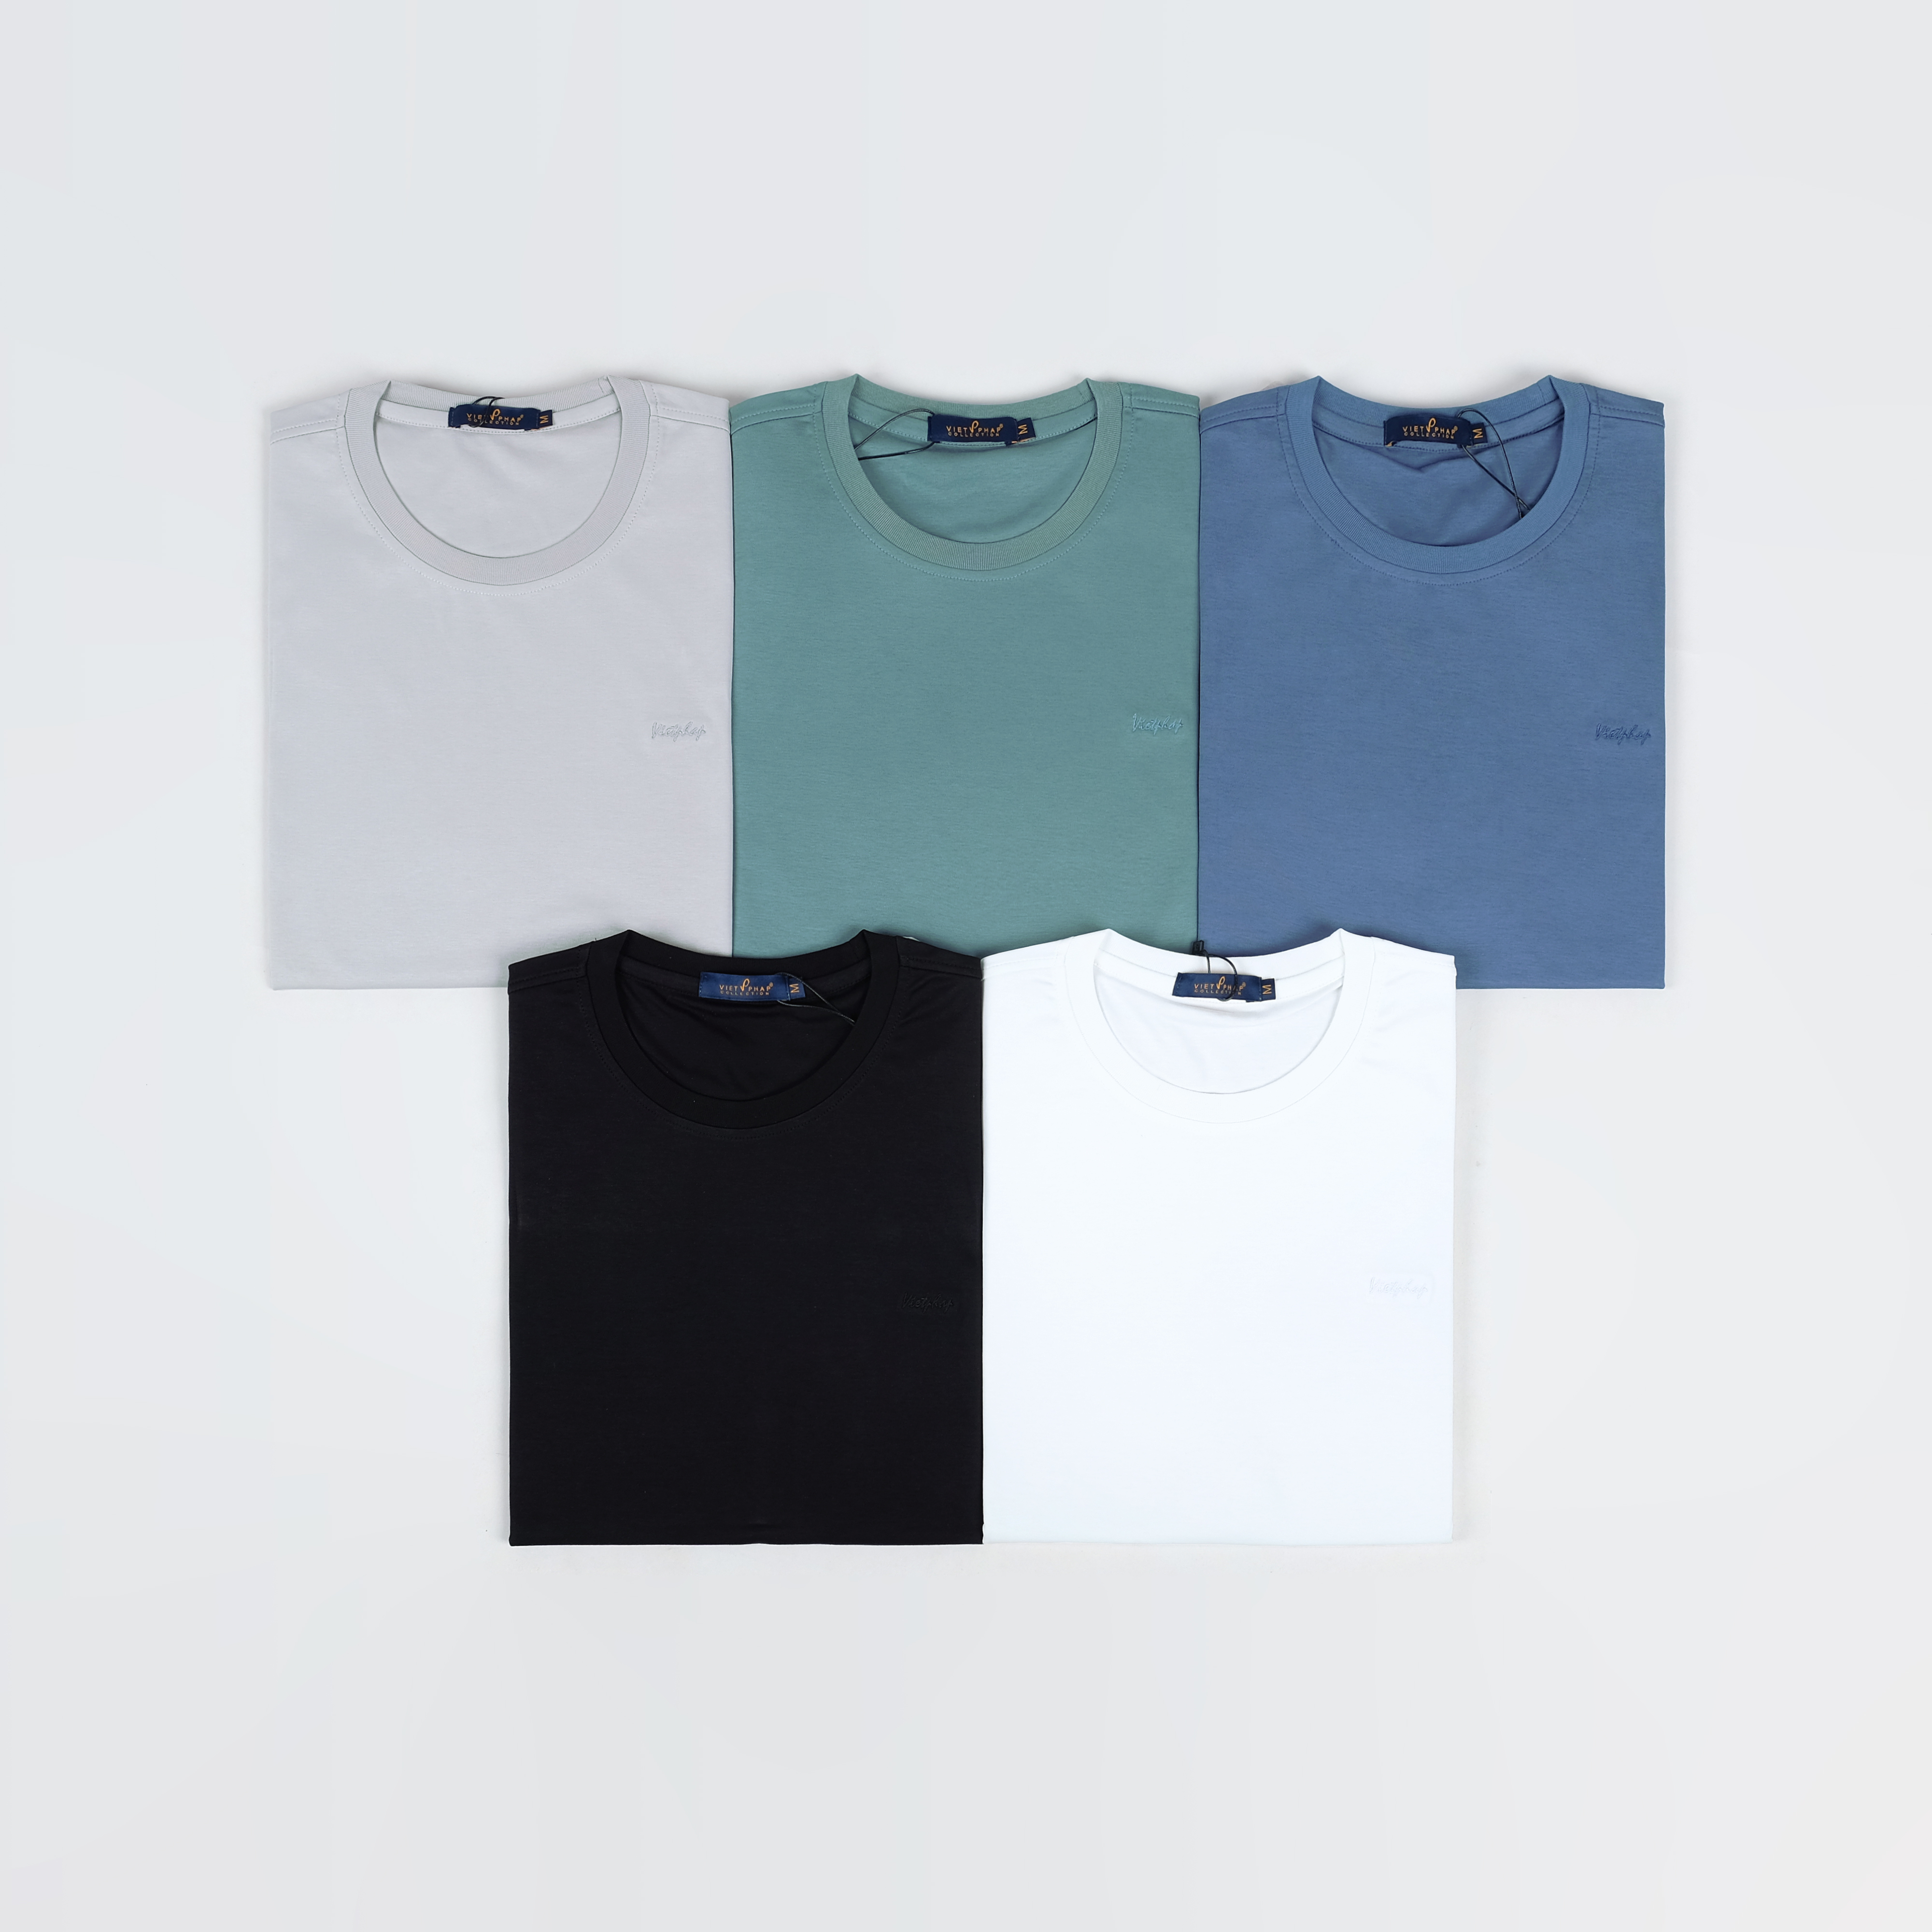 Áo Thun T-Shirt Nam Cao Cấp VIỆT PHÁP / Chất liệu cotton 4 chiều, co dãn và thấm hút mồ hôi 901